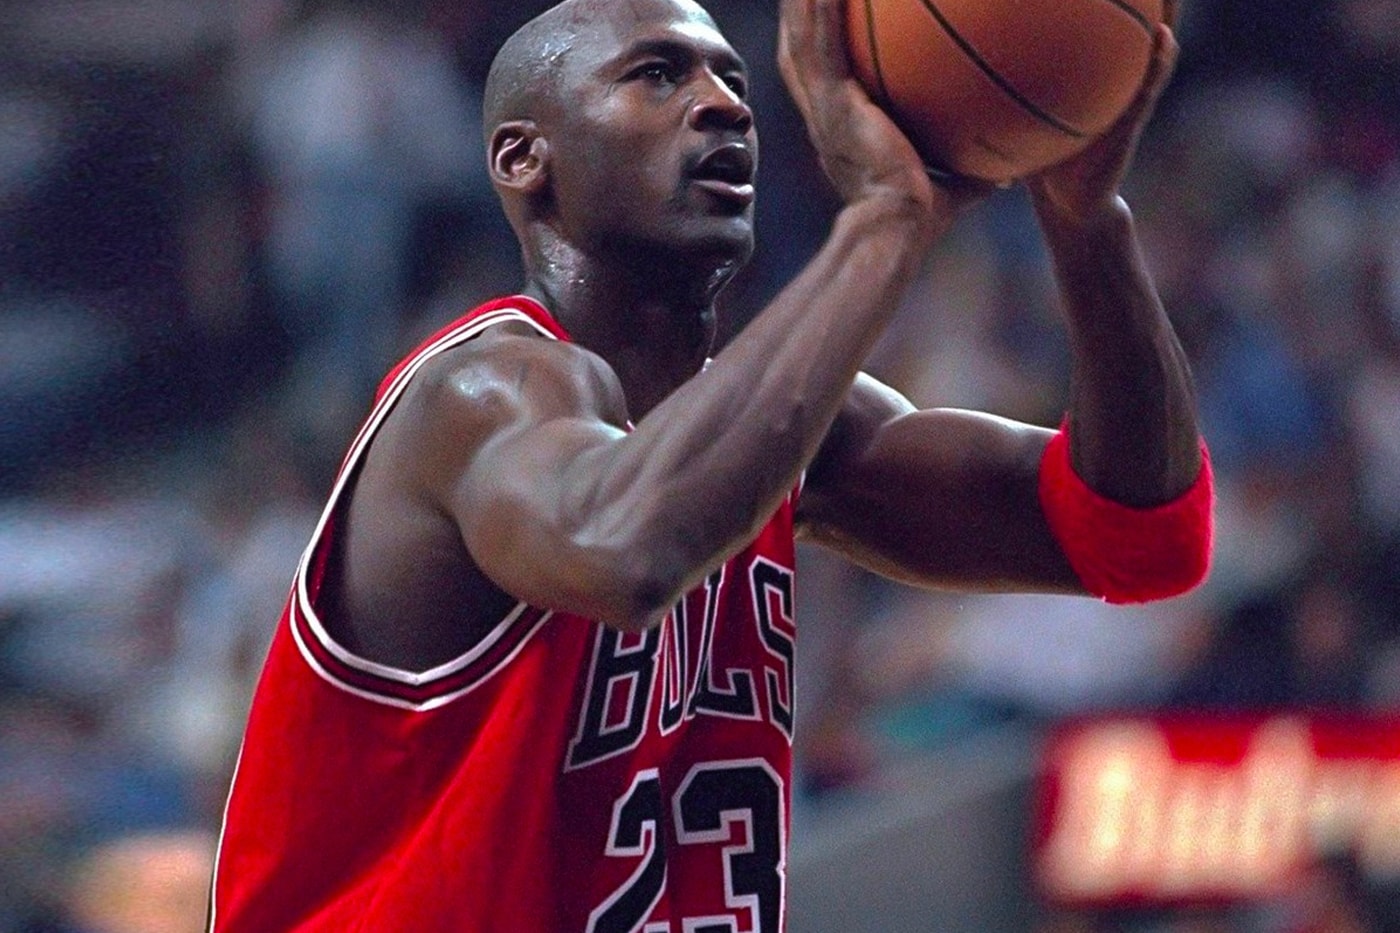 エアジョーダン1 イーベイ マイケル・ジョーダン直筆サイン入りの1985年製 Air Jordan 1 のデッドストックが約1億円で eBay に出品中 Unworn 1985 Michael Jordan-Autographed Air Jordan 1s List for $1 Million USD on eBay